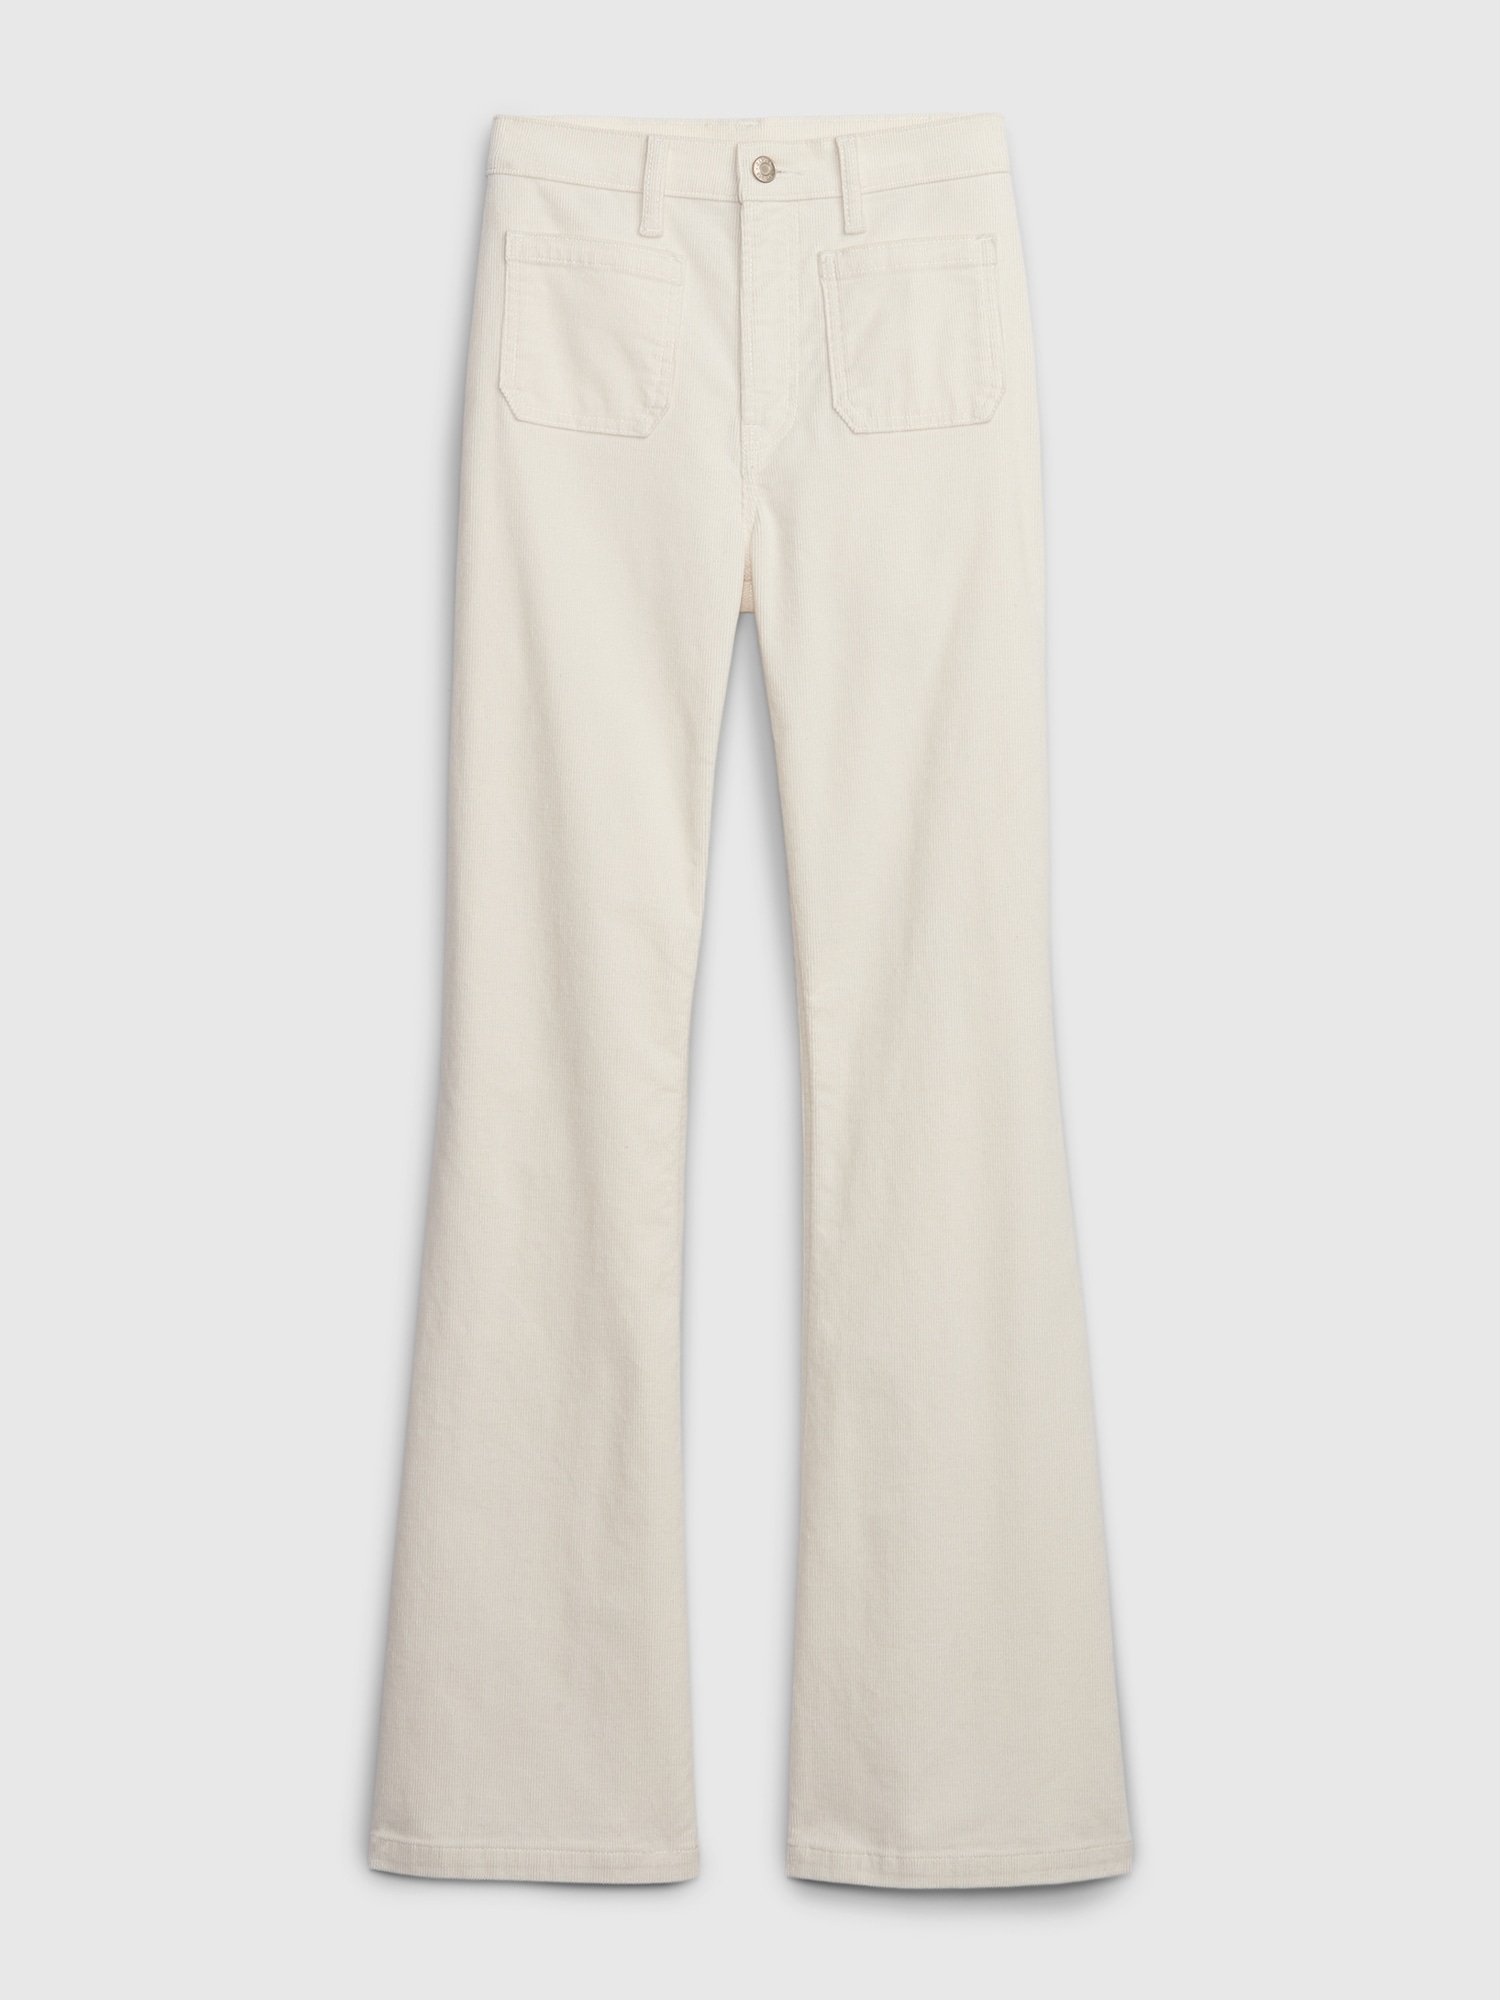 Women's Solid Color Font Slit Hem Corduroy Flare Pants at Rs 1770.96/piece, Ladies Cotton Pant